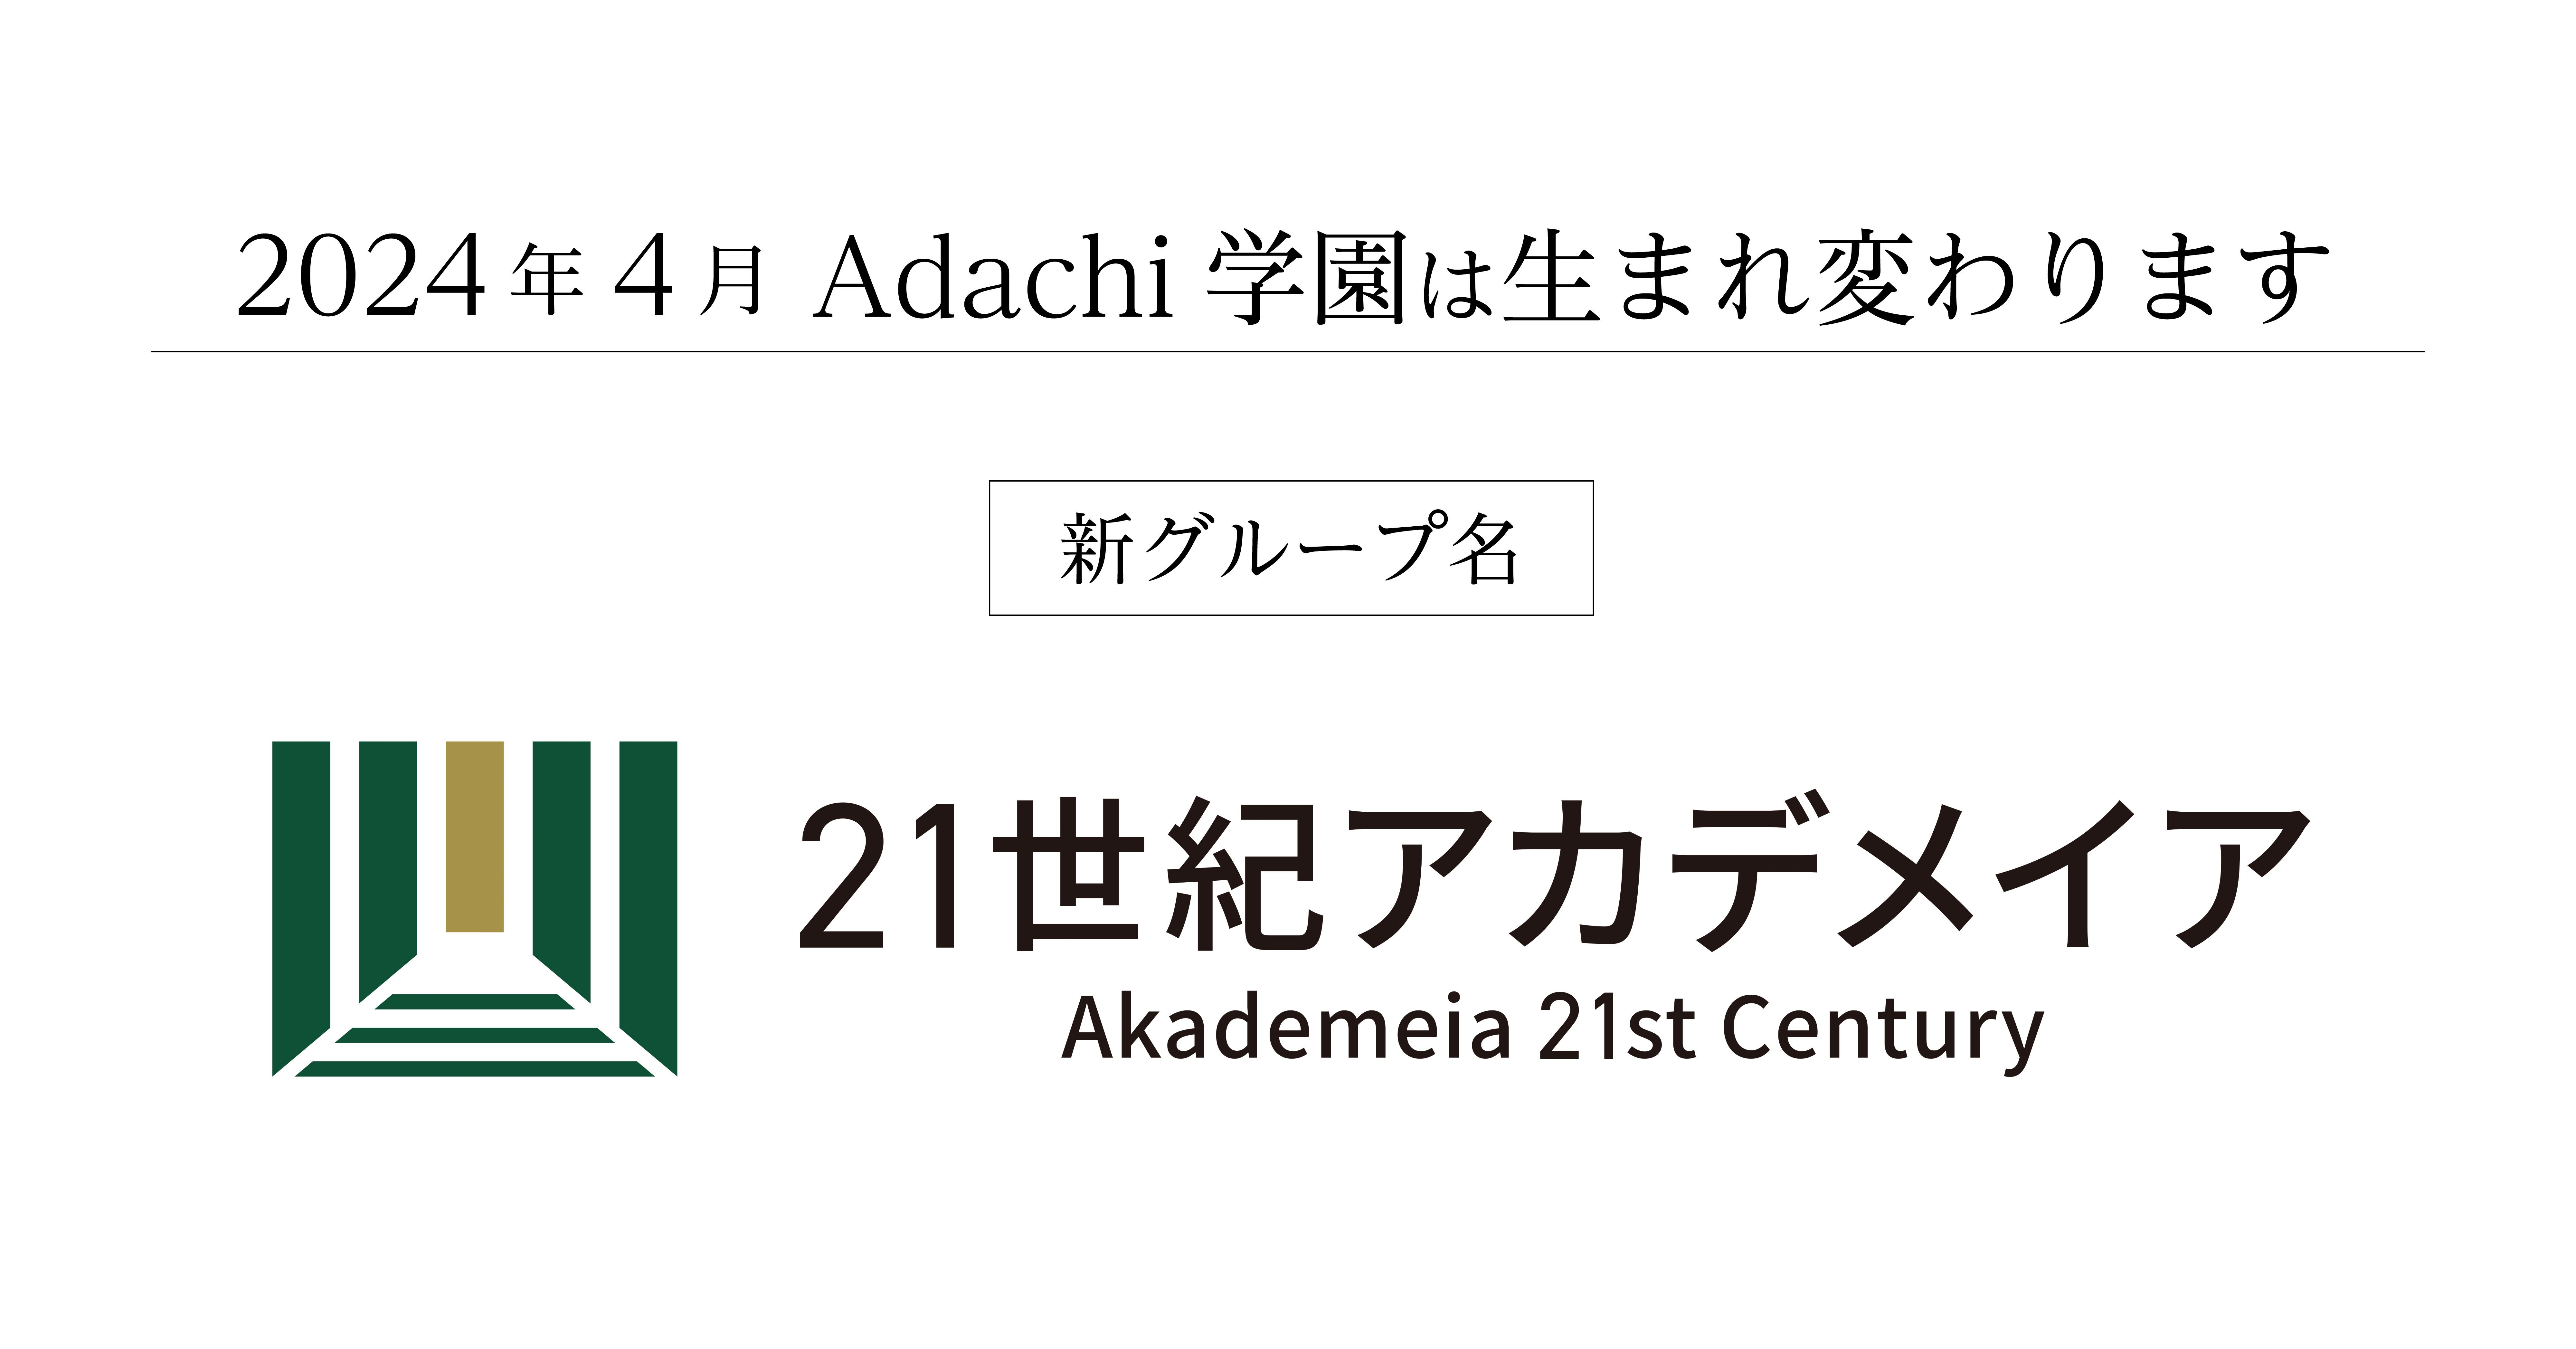  学園グループ名称変更のお知らせ -『21世紀アカデメイア』学長 田坂広志